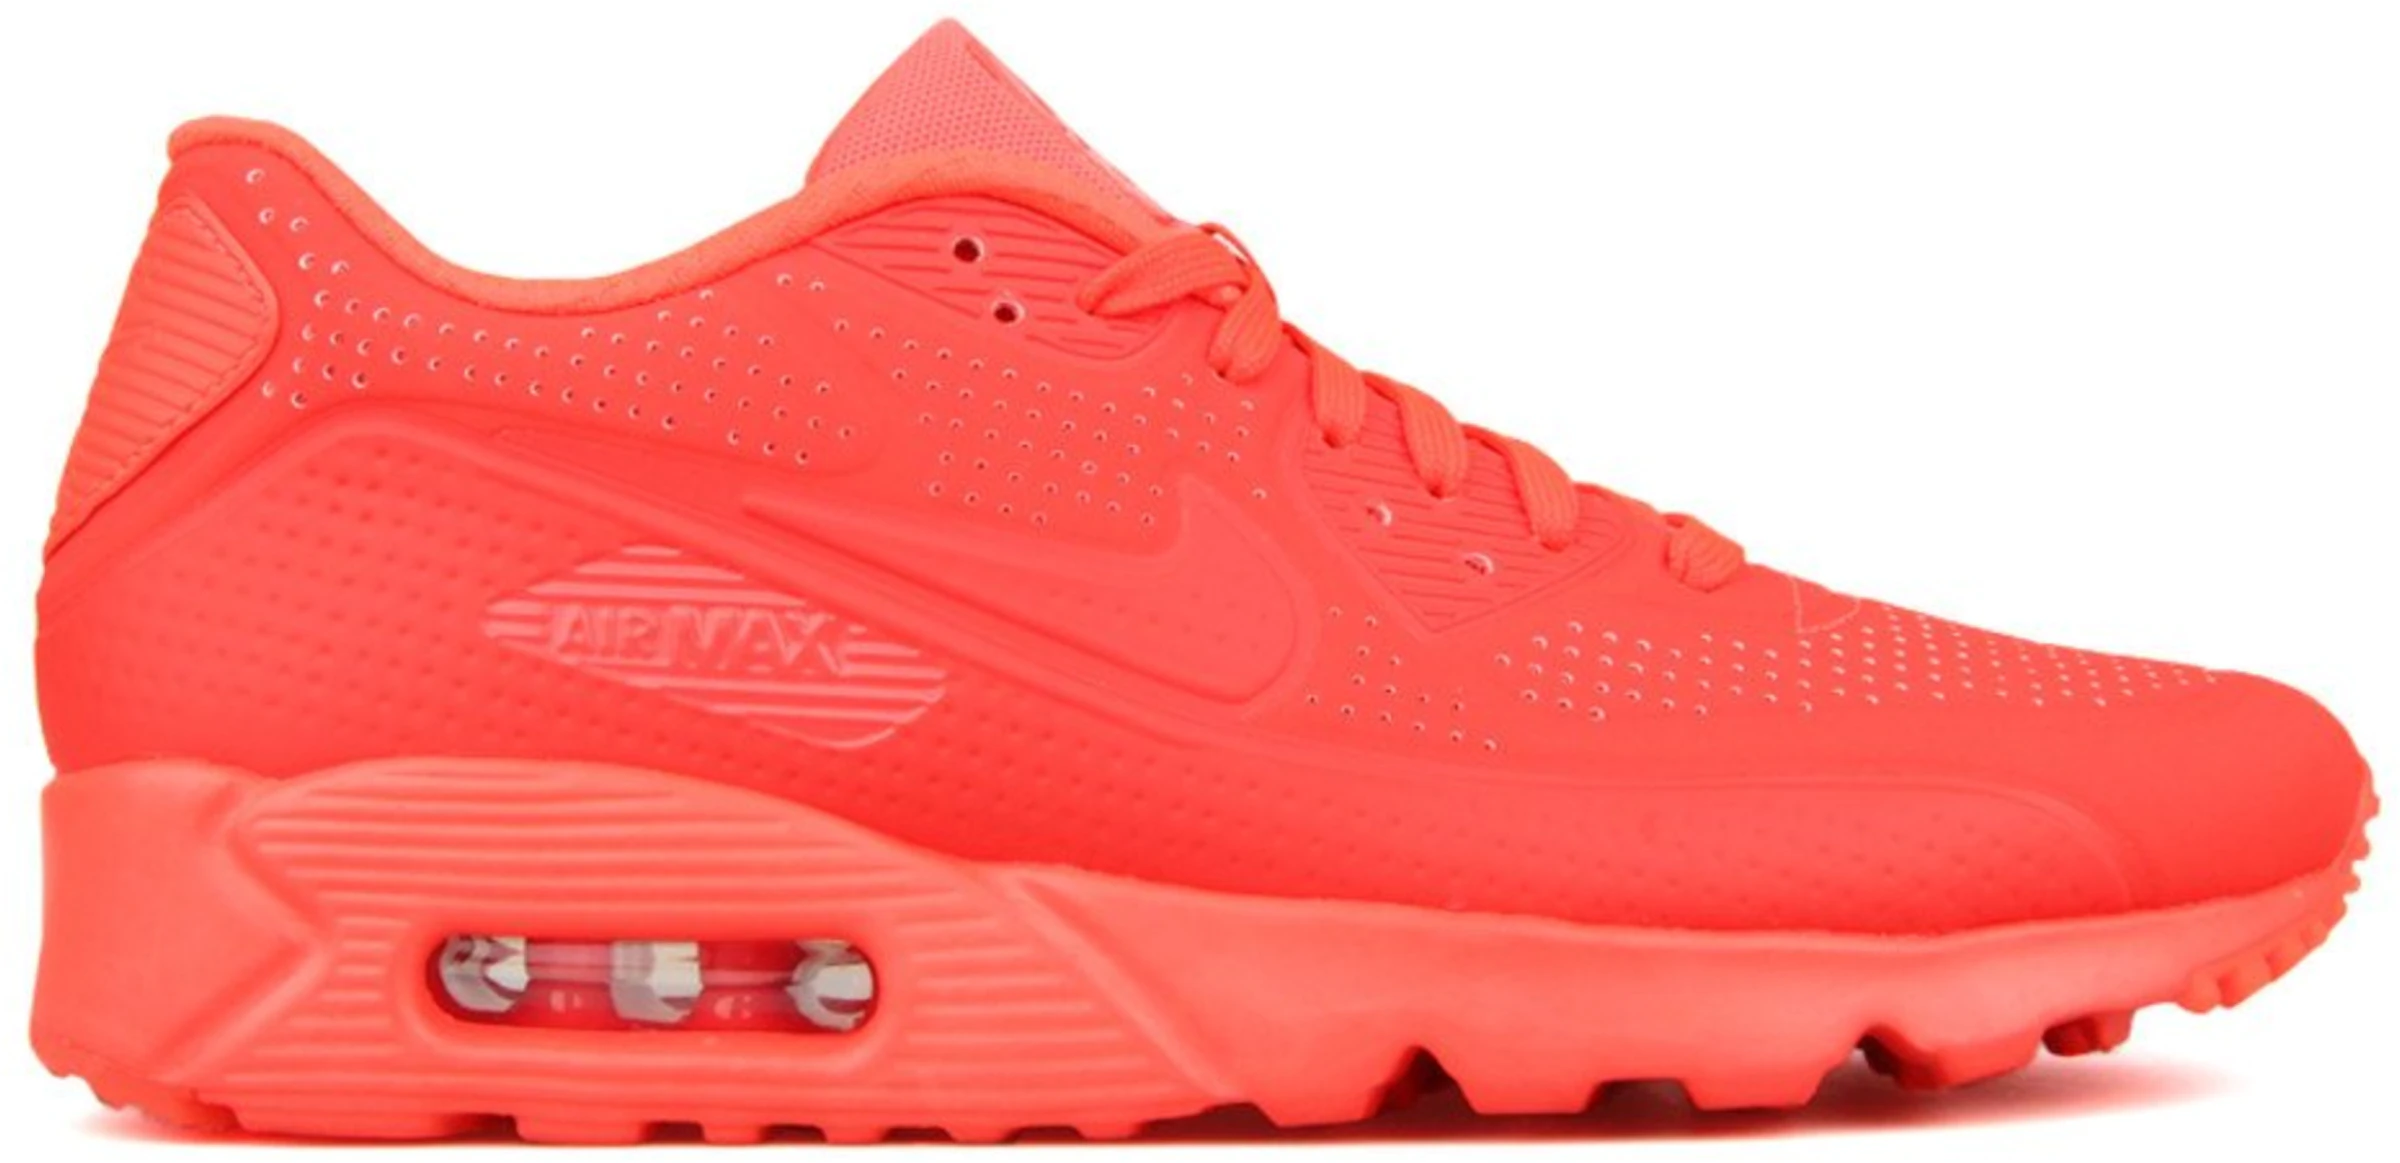 Nike Air Max Ultra Moire Bright Crimson - 819477-600 US